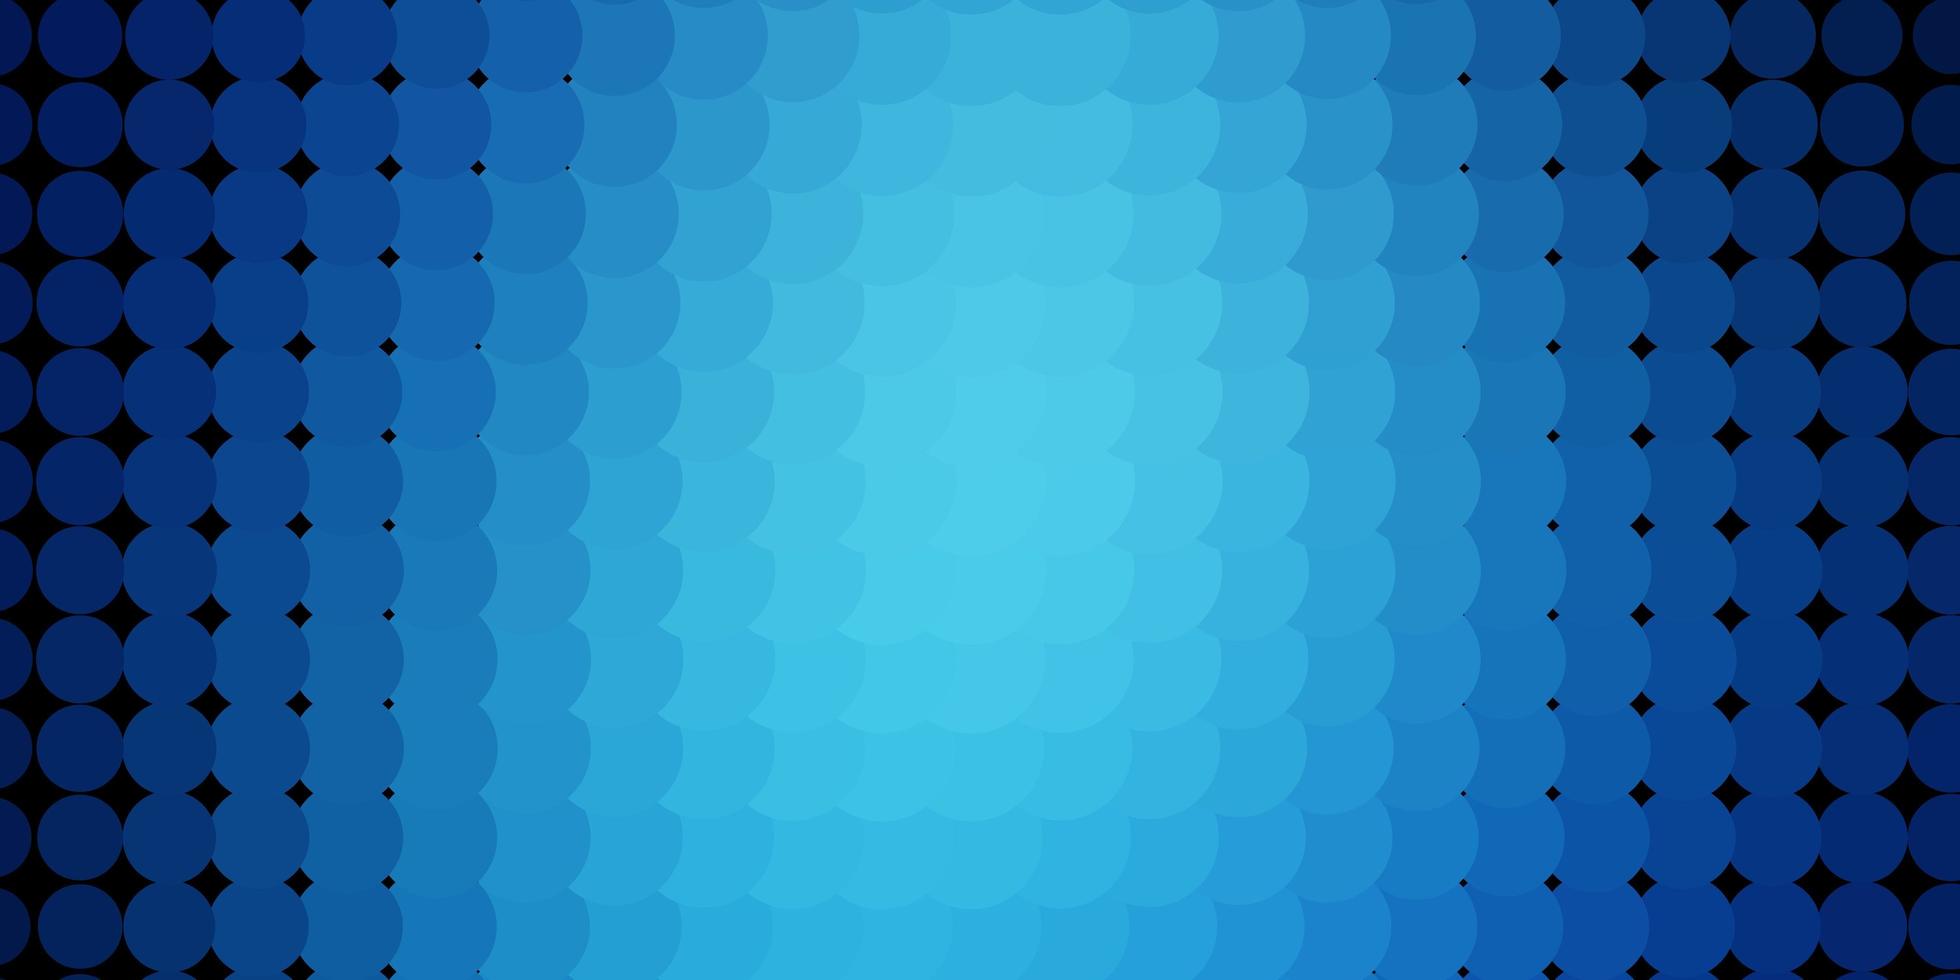 fond de vecteur bleu foncé avec des cercles